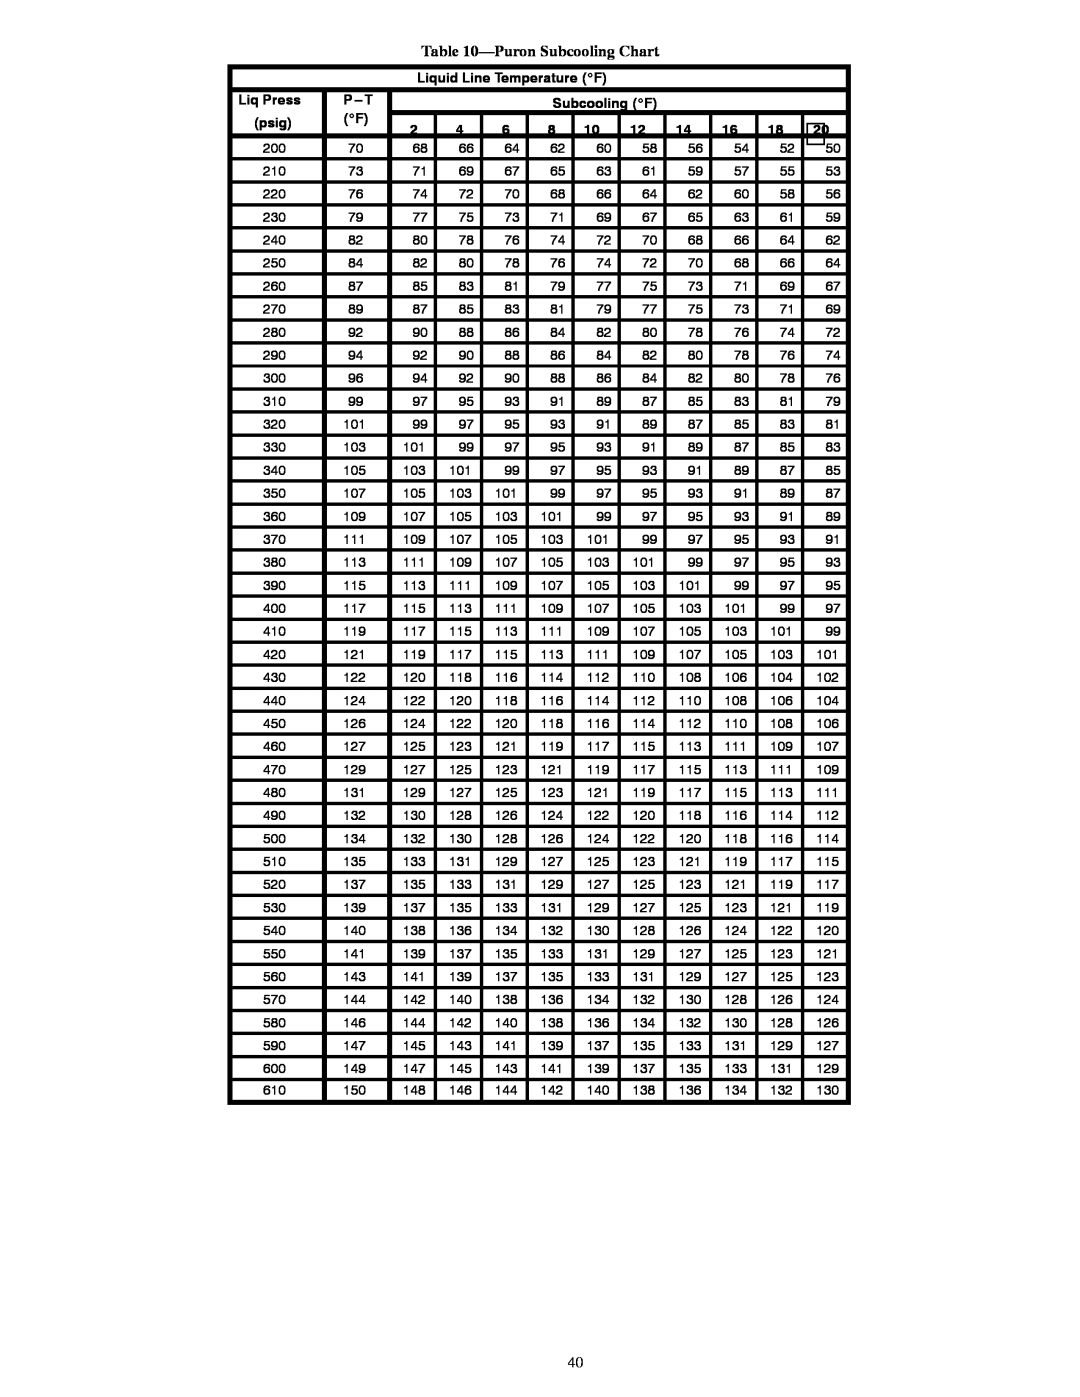 Bryant R-22 service manual PuronSubcooling Chart, Liquid Line Temperature _F, Liq Press, P---T, Subcooling _F, psig 